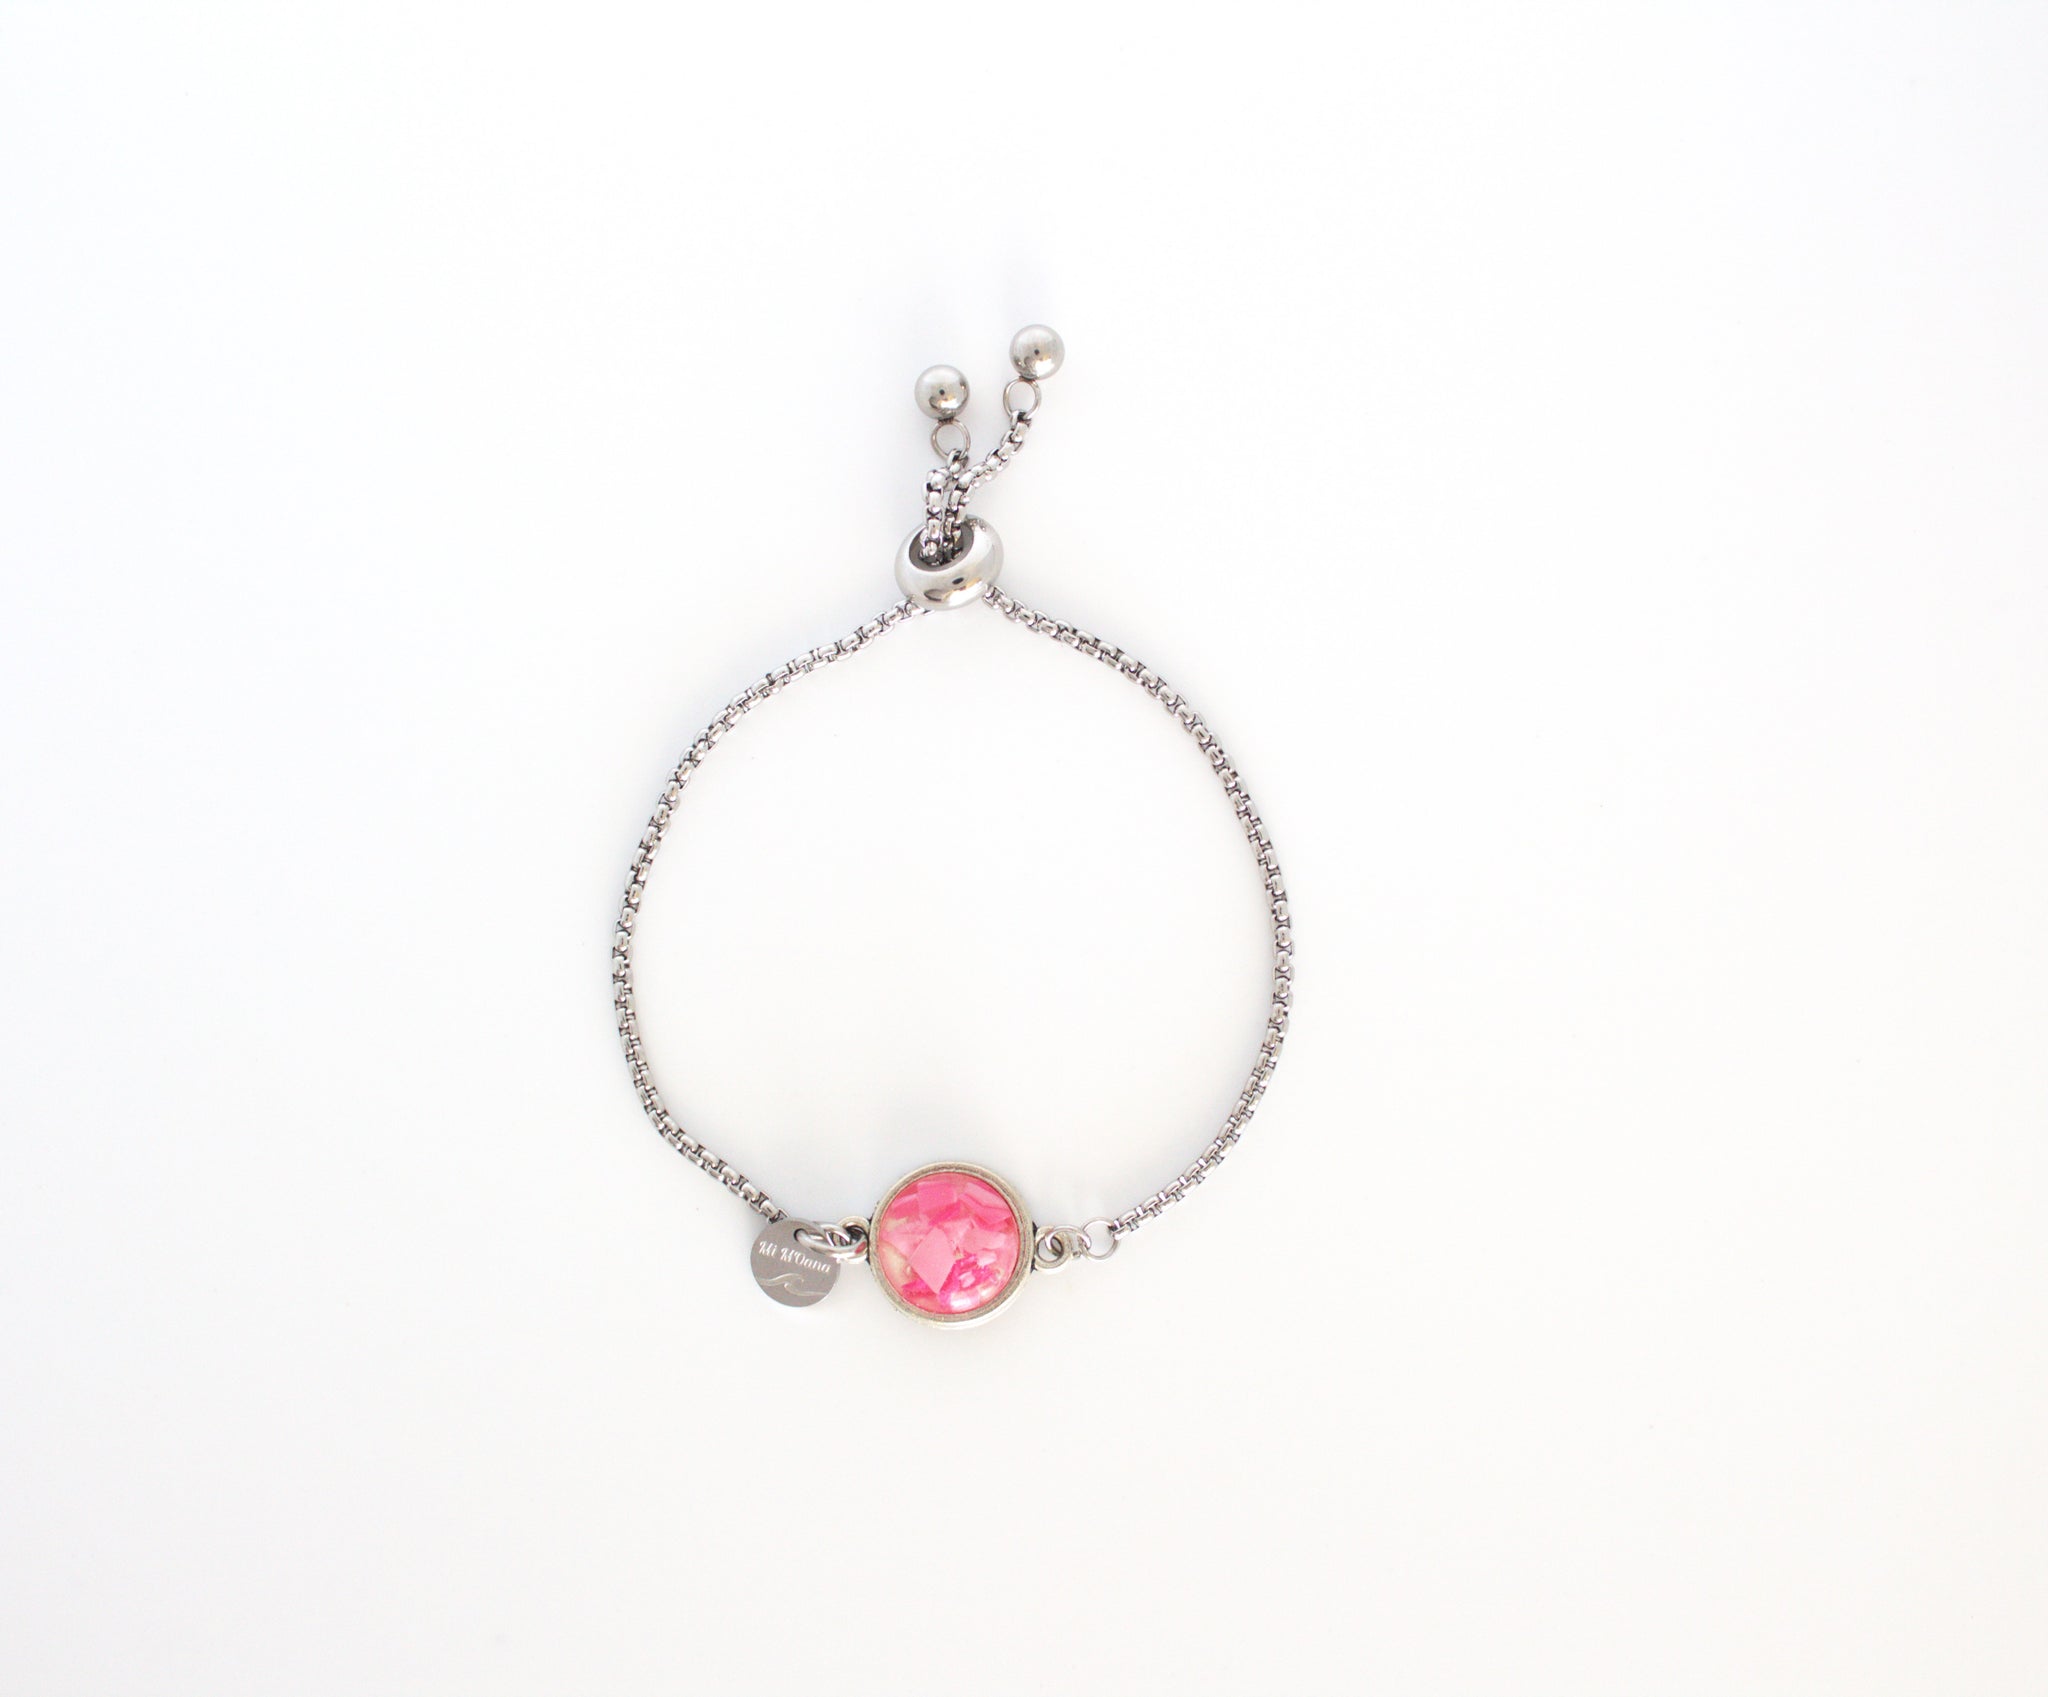 Bracelet with Ocean plastic in babypink color